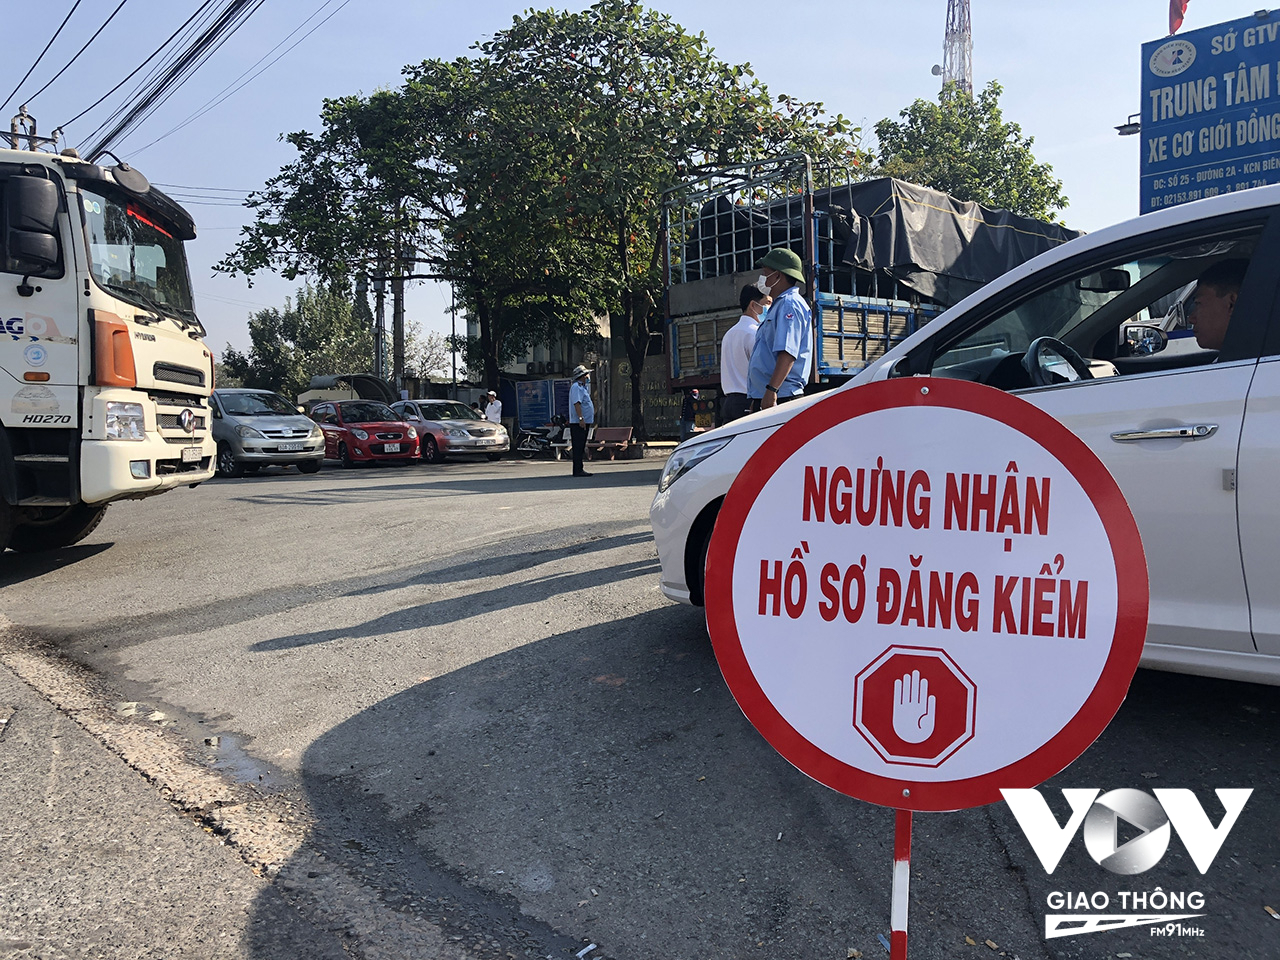 Trung tâm đăng kiểm ở Đồng Nai phải treo bảng ngừng nhận hồ sơ vì lượng phương tiện quá đông